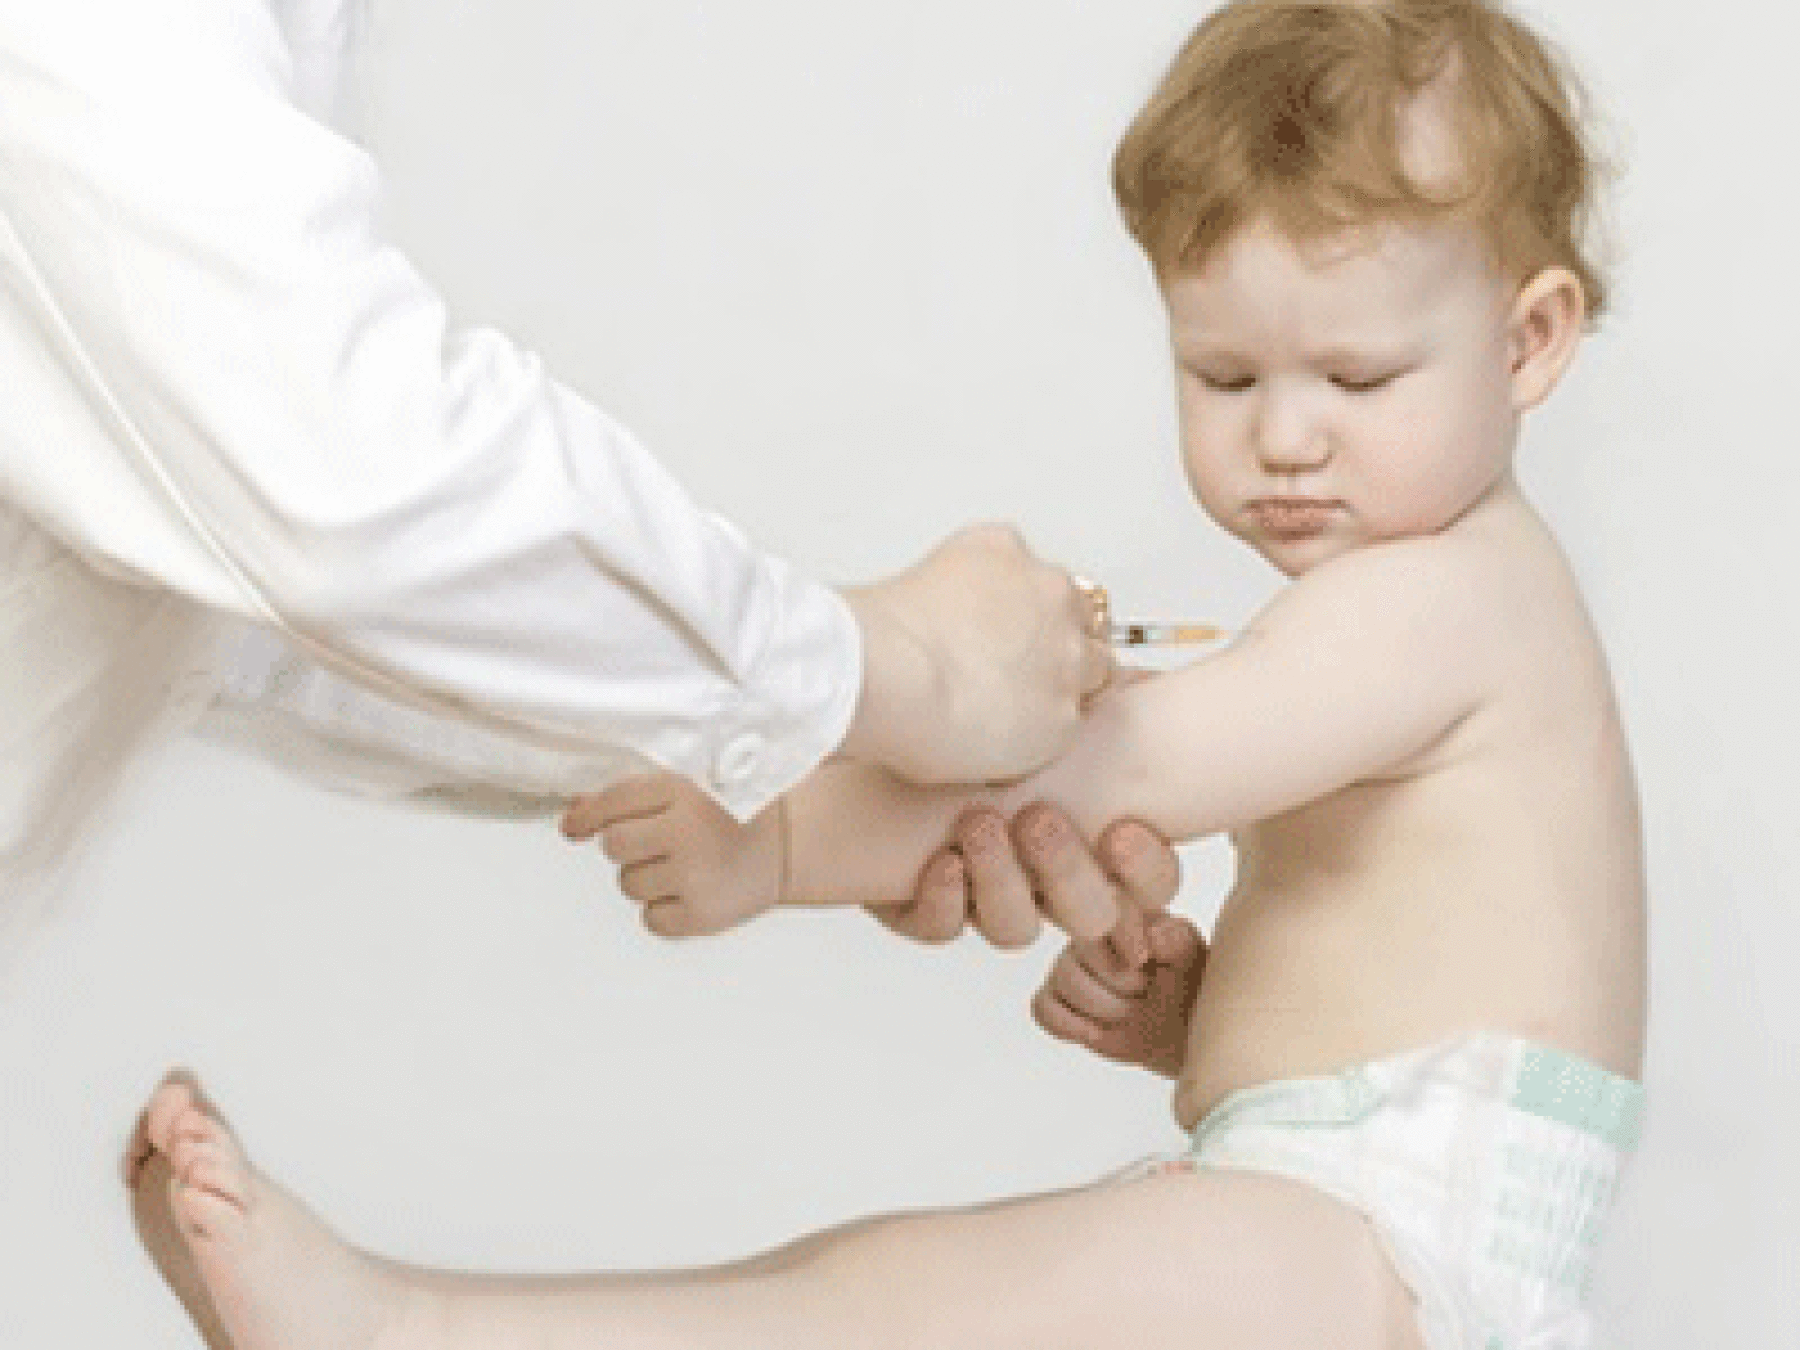 Rougeole, hépatite B… le point sur les nouveaux vaccins obligatoires